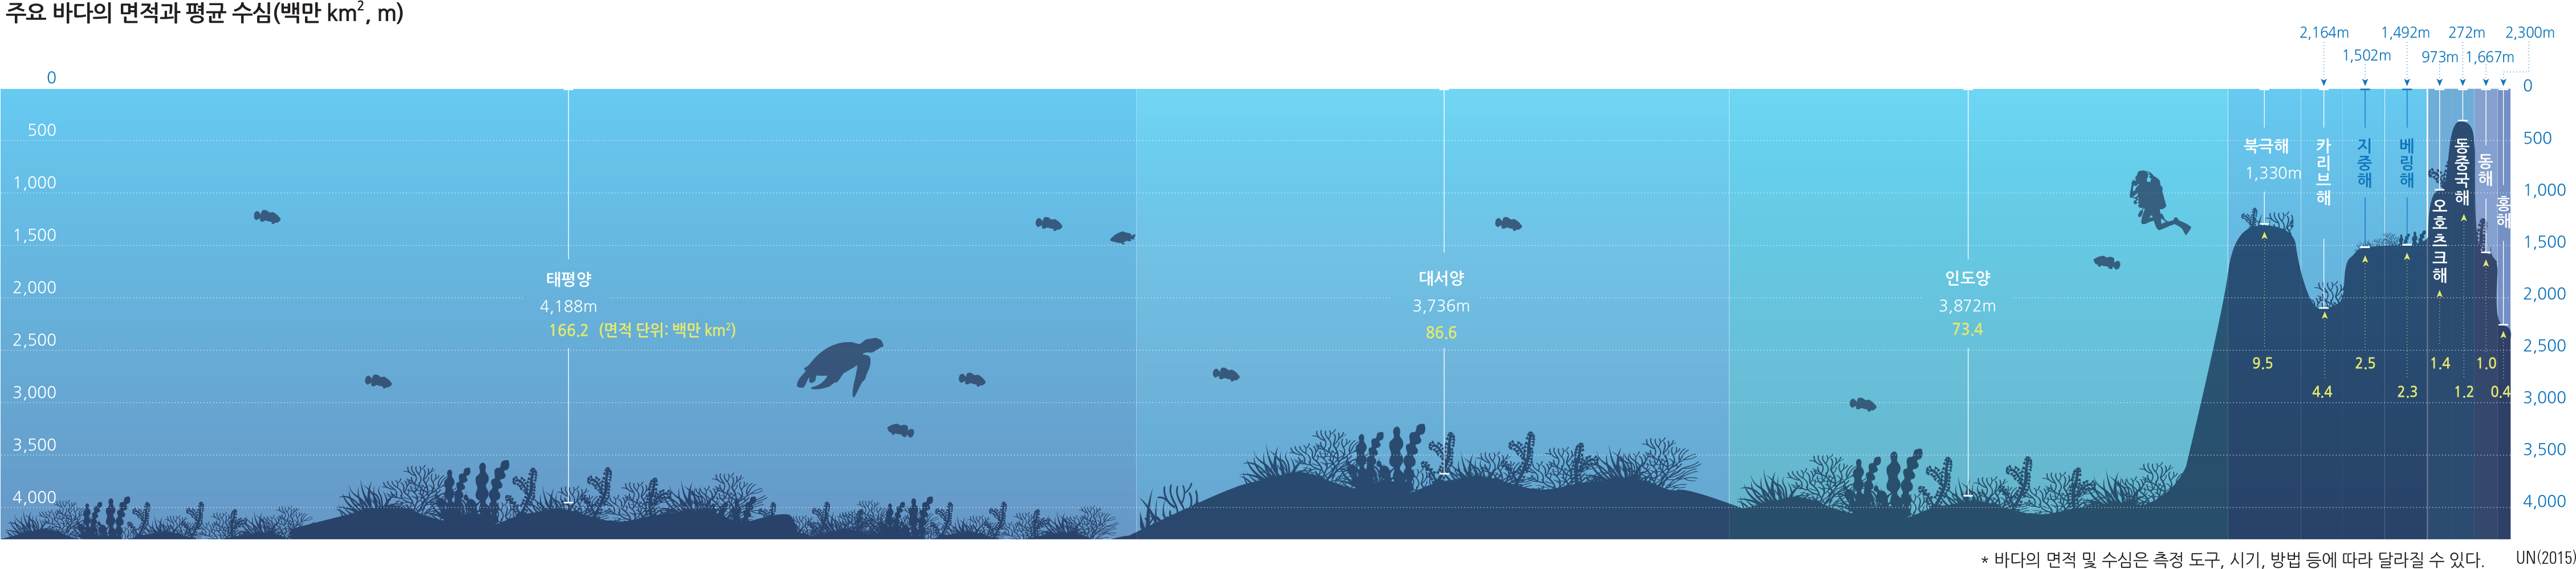 주요 바다의 면적과 평균 수심(백만 km2, m)